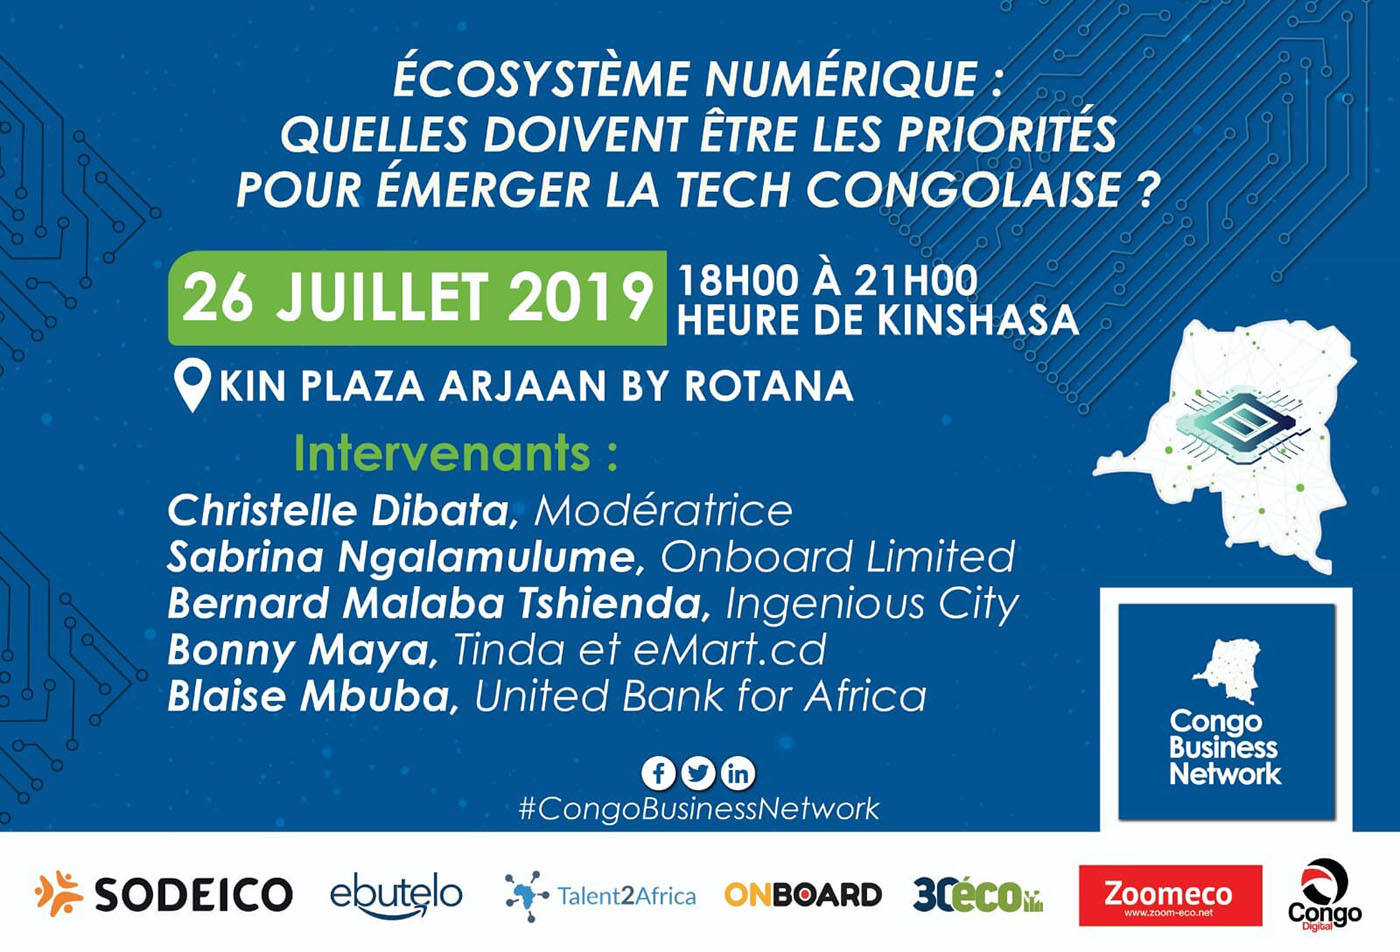 Talent2Africa s’associe à Congo Business Network pour l’événement sur l'écosystème numérique congolais